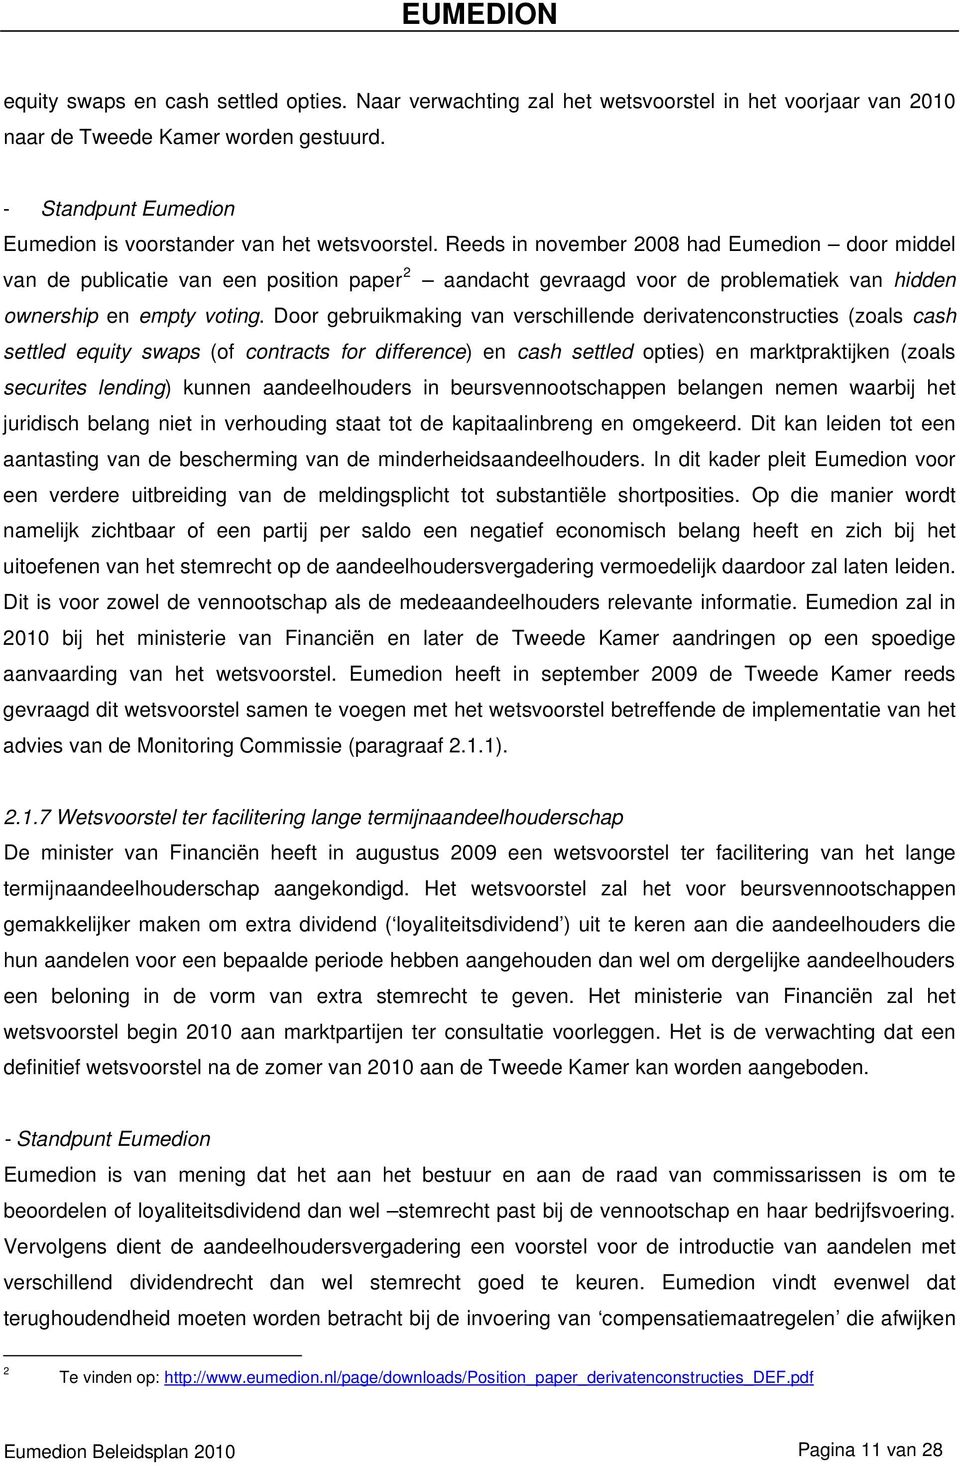 Reeds in november 2008 had Eumedion door middel van de publicatie van een position paper 2 aandacht gevraagd voor de problematiek van hidden ownership en empty voting.